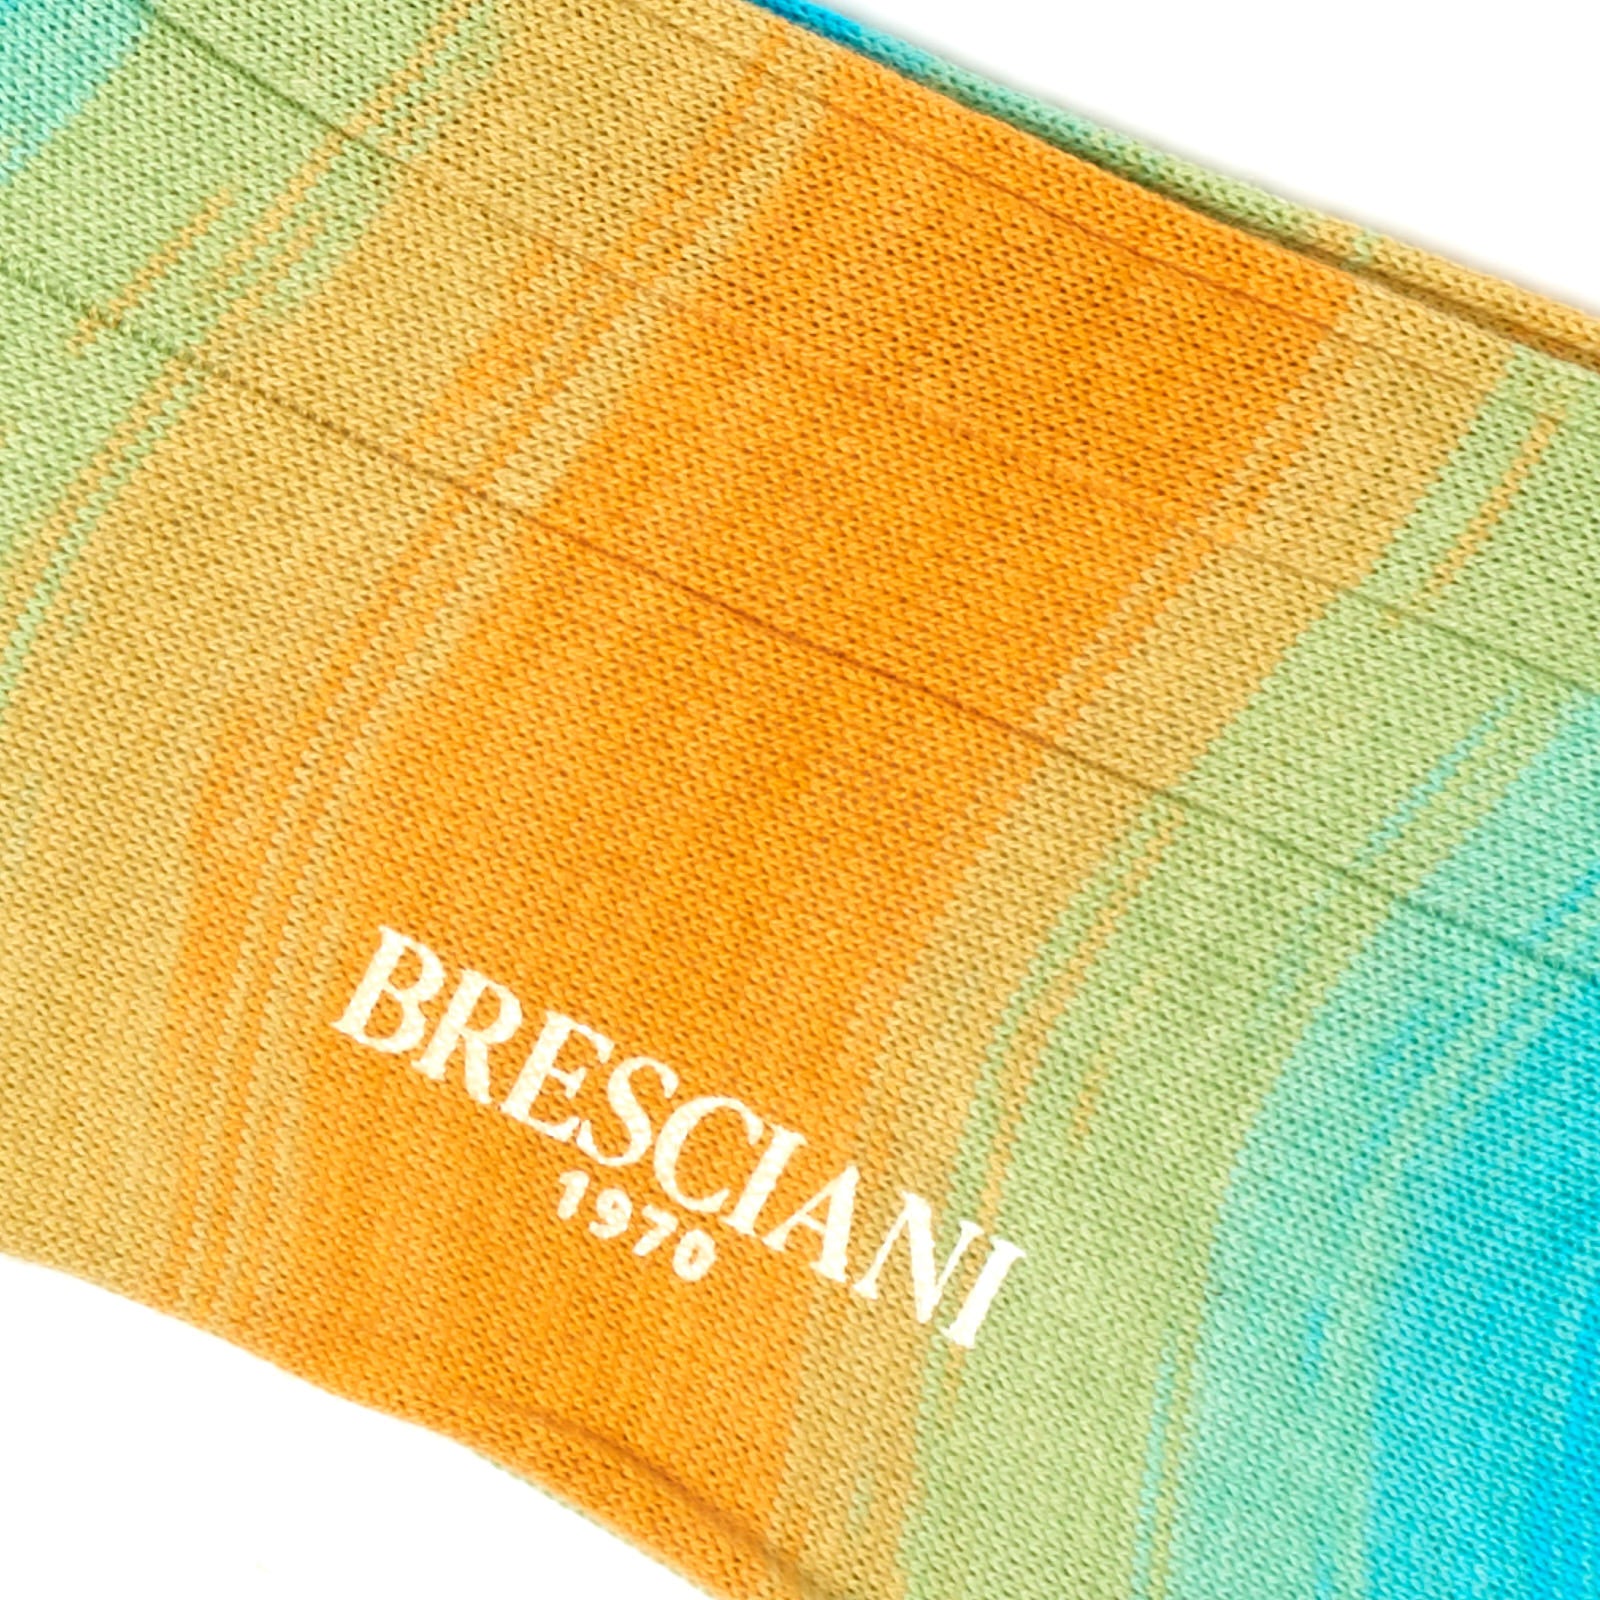 BRESCIANI Ombre Cotton Mid Calf Length Socks US M-L BRESCIANI